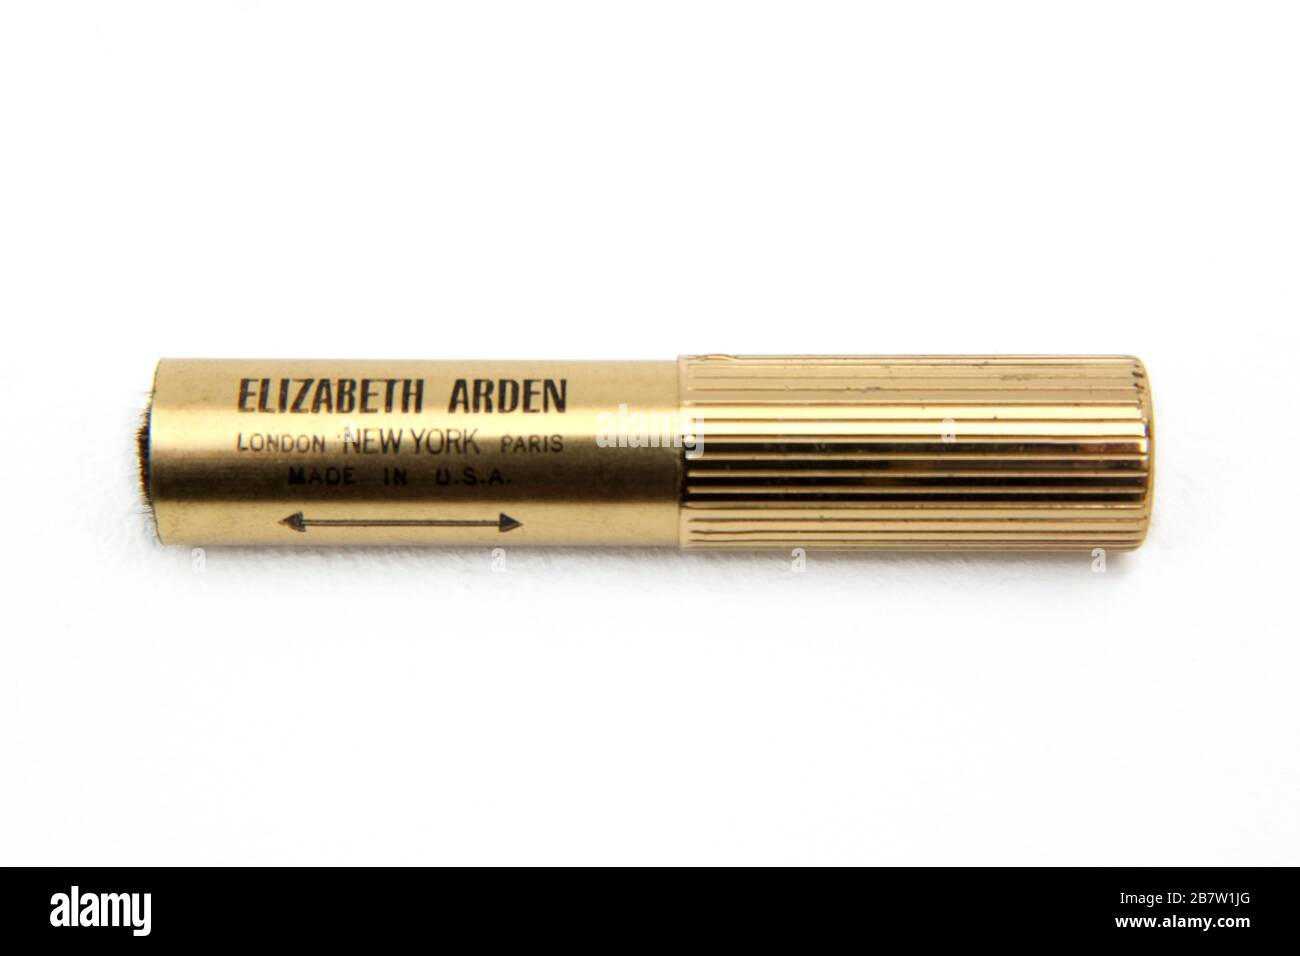 Cepillo cosmético retráctil Elizabeth Arden bañado en oro vintage Foto de stock